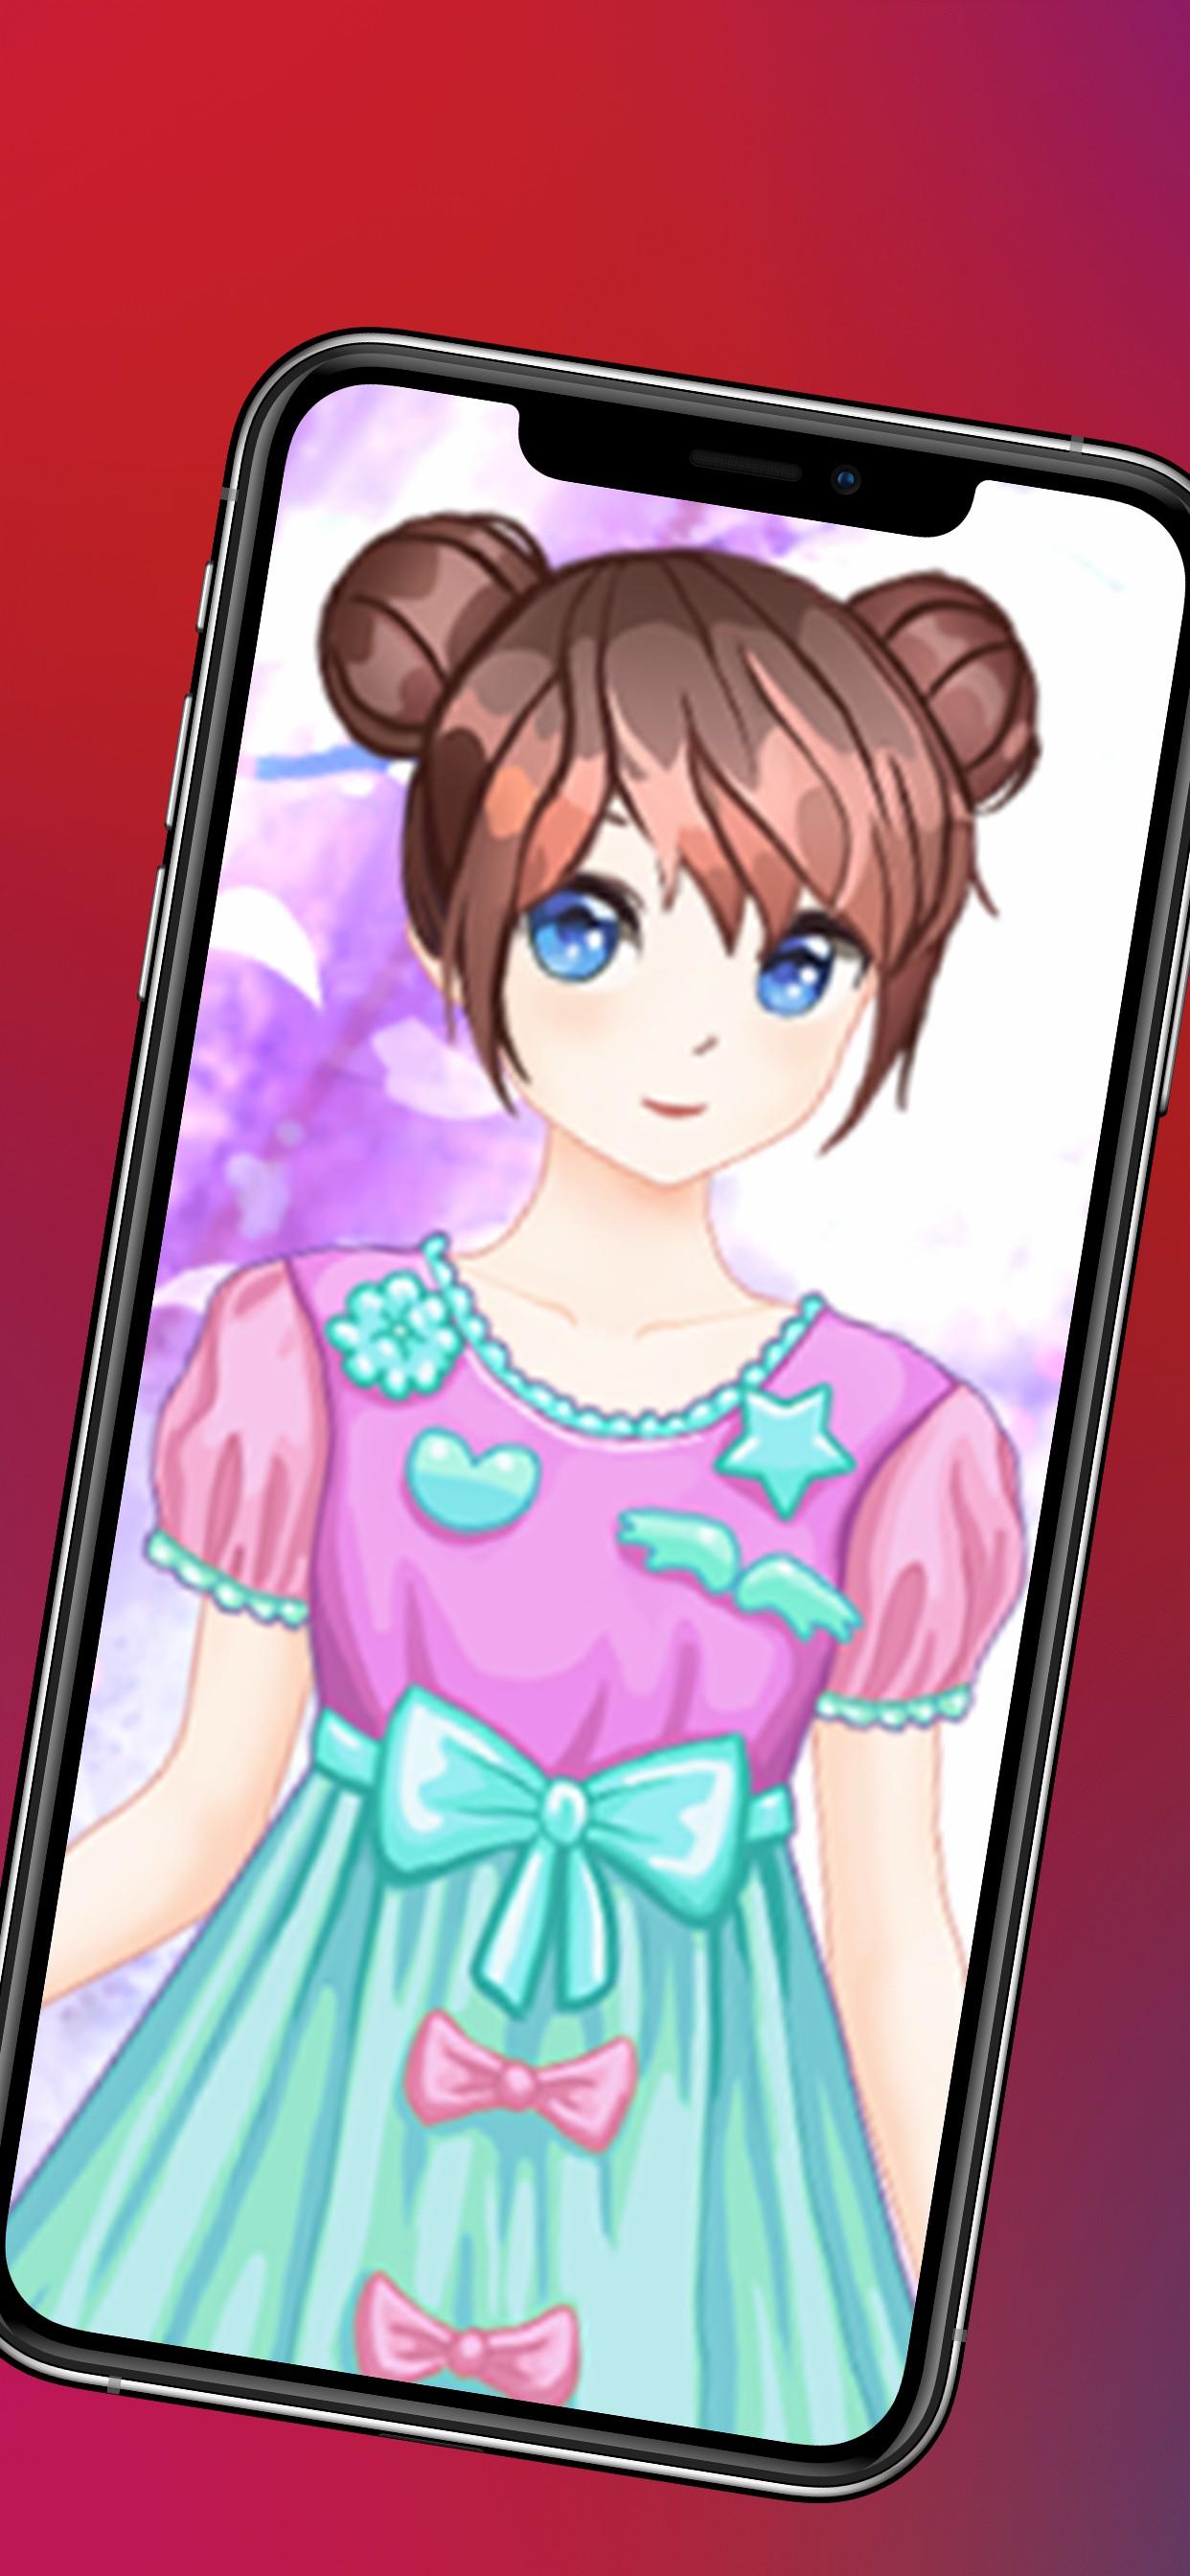 Jogos vestir meninas maquiagem APK (Android Game) - Baixar Grátis